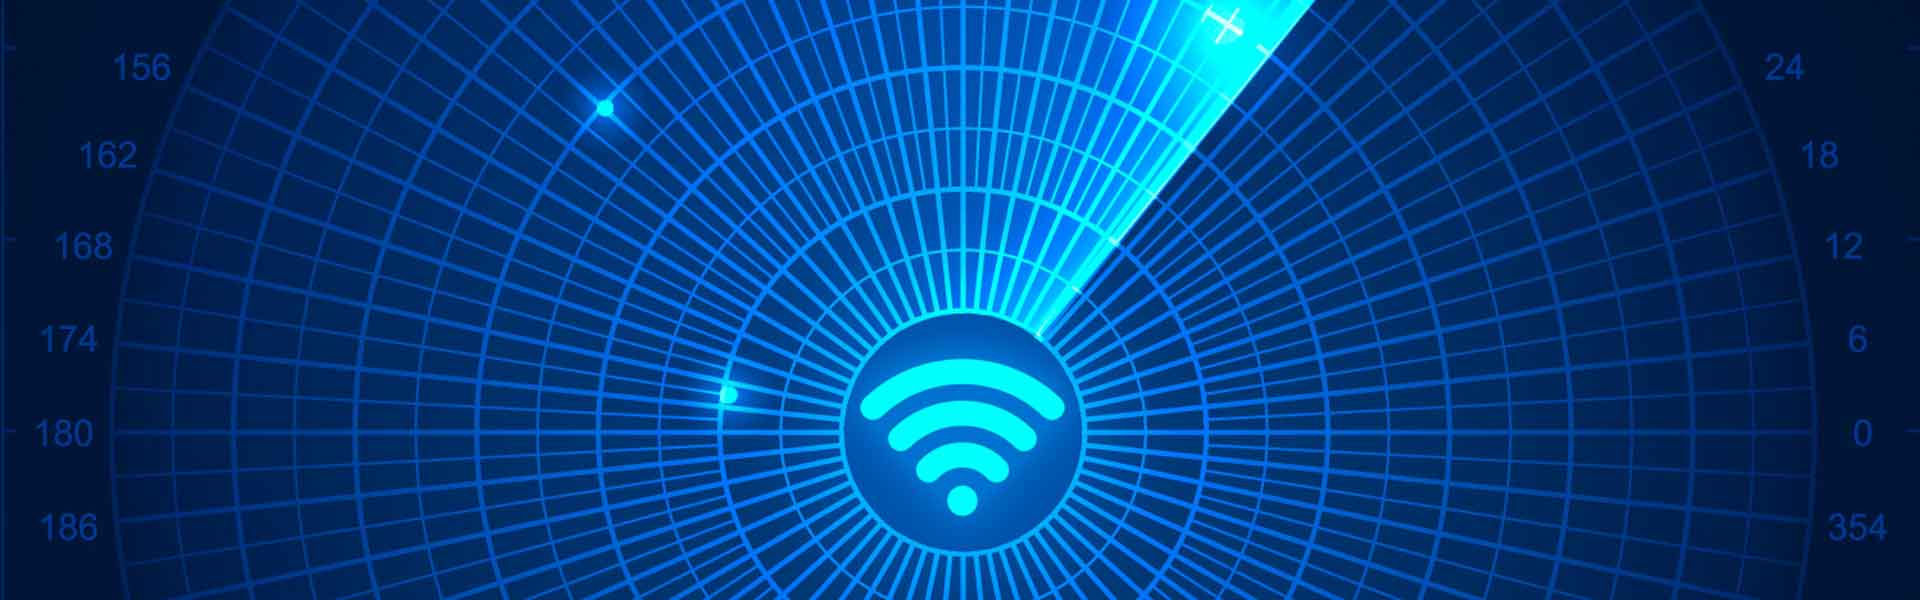 Cercare i dispositivi collegati alla rete WiFi